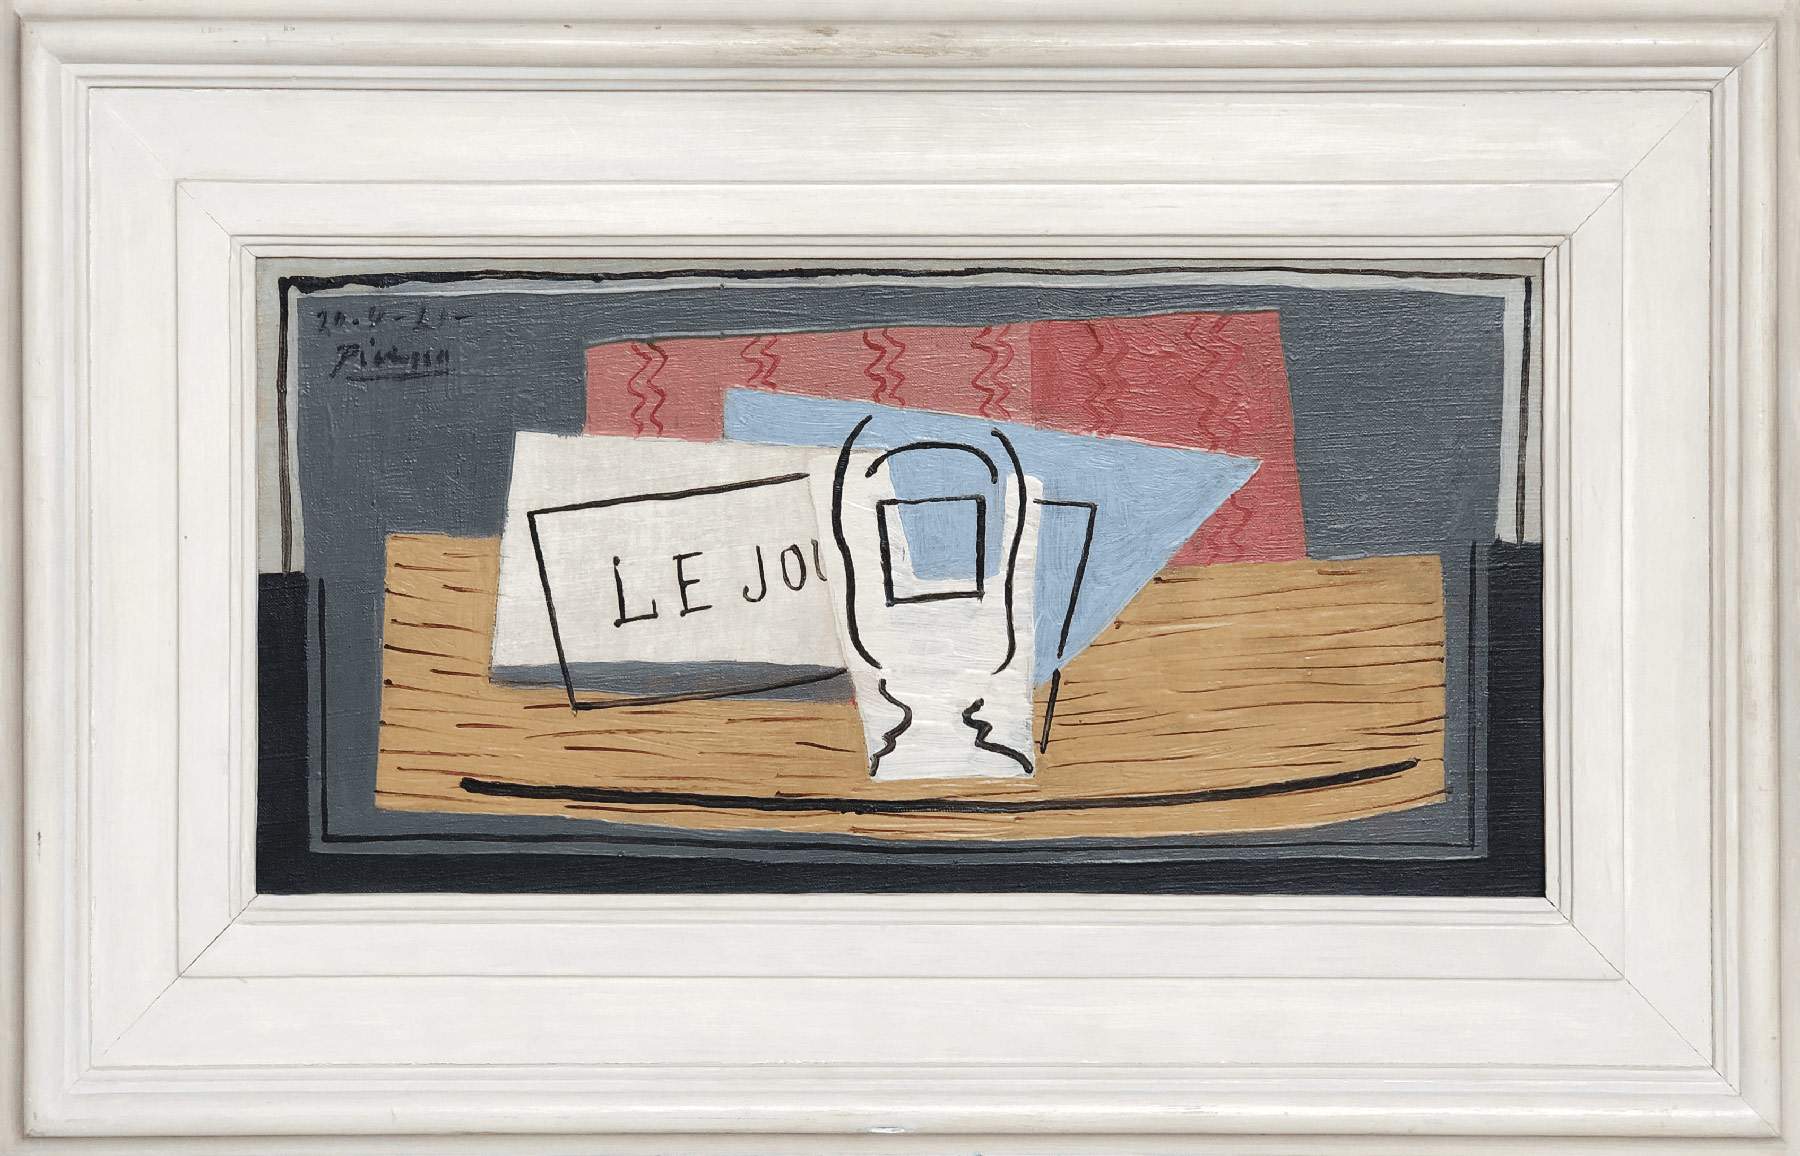 Lotteria online mette in palio a scopo benefico un dipinto di Picasso del valore di 1milione a 100 euro